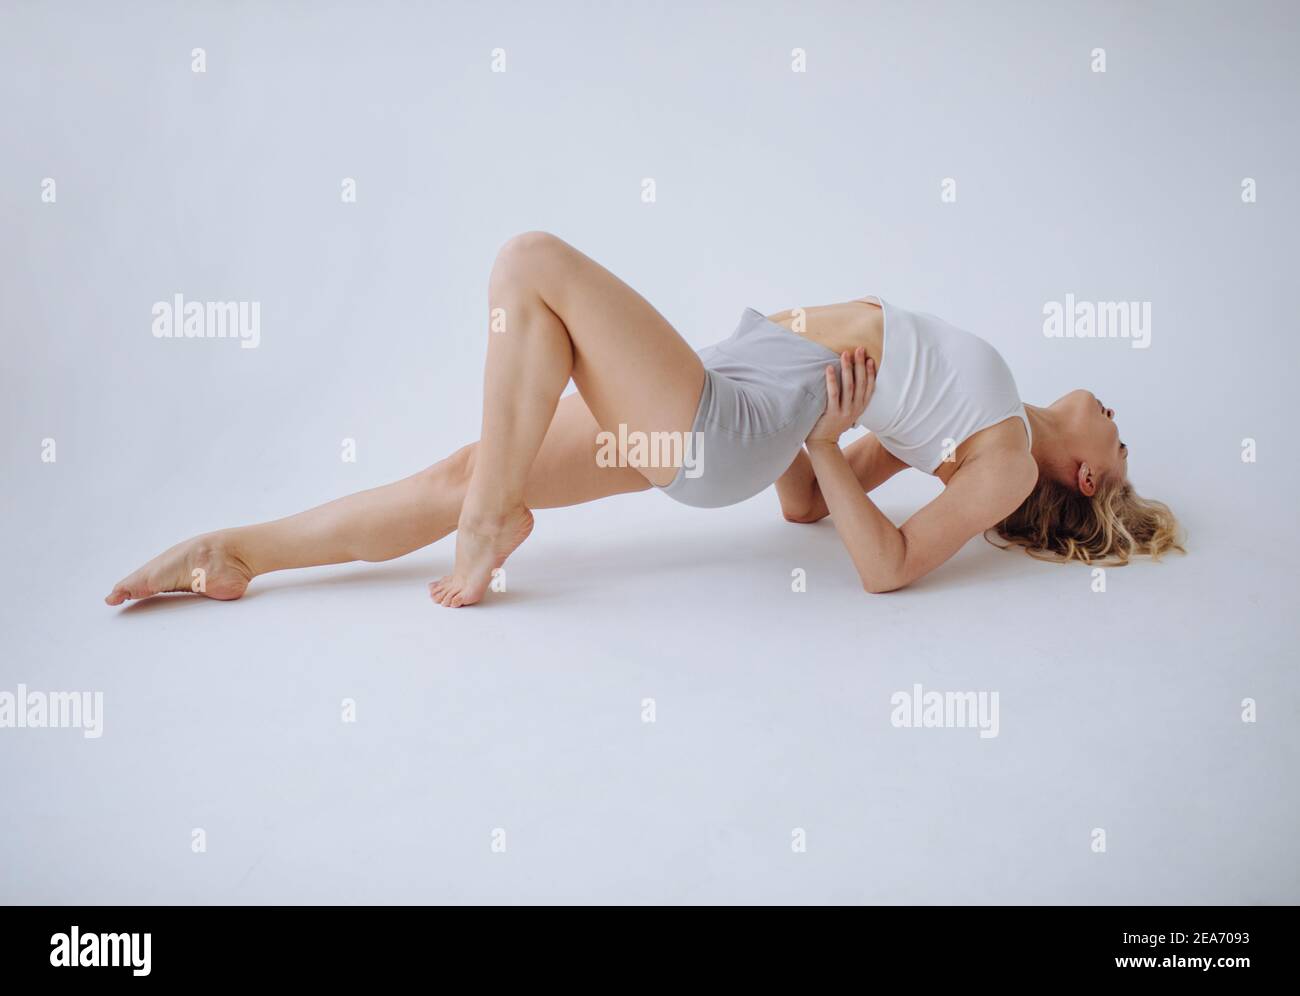 Gimnasta femenina acostada en el suelo estirándose en un estudio Foto de stock